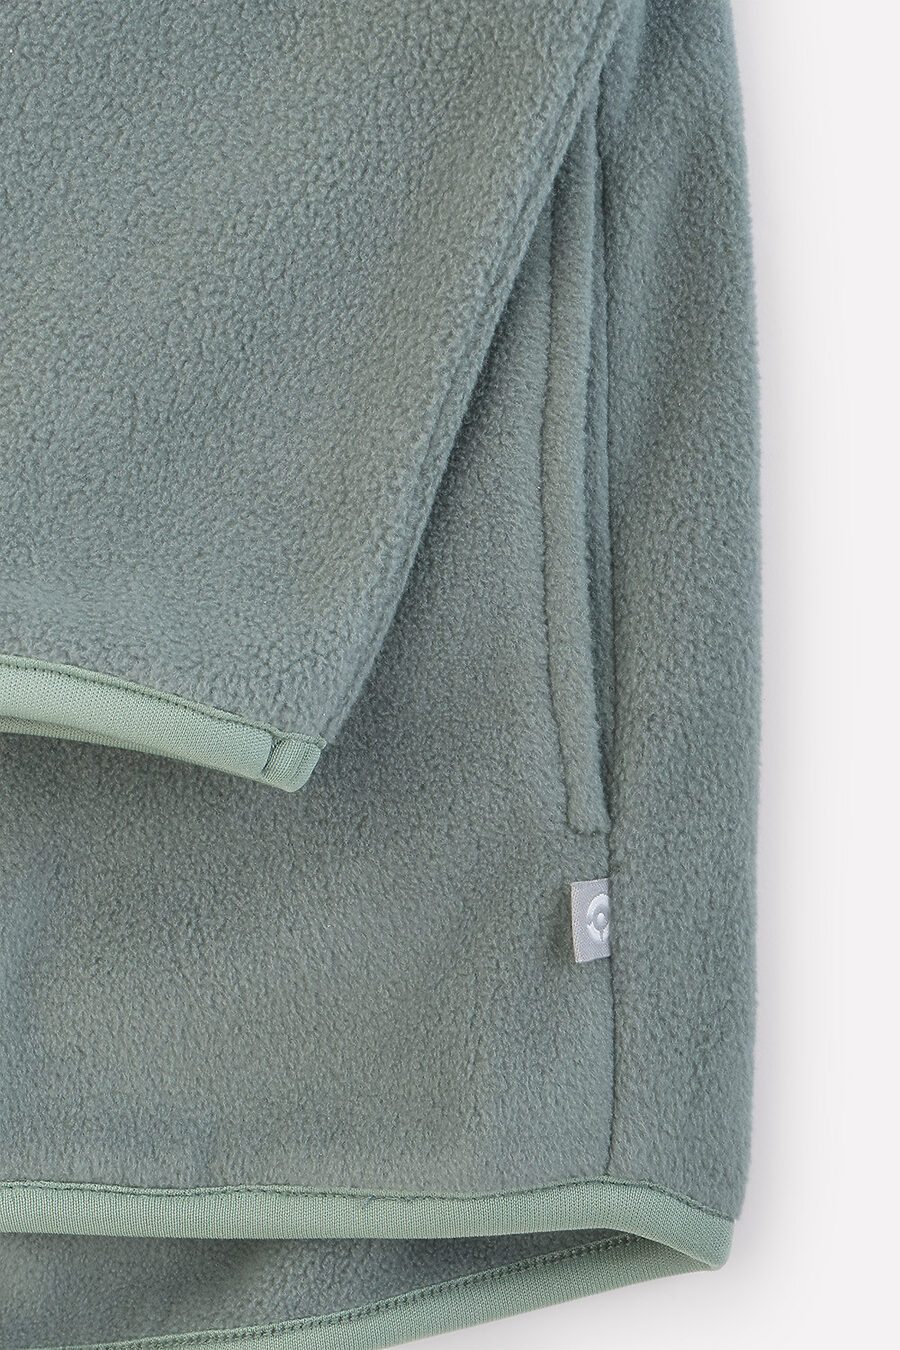 Куртка для мальчиков CROCKID 796463 купить оптом от производителя. Совместная покупка детской одежды в OptMoyo